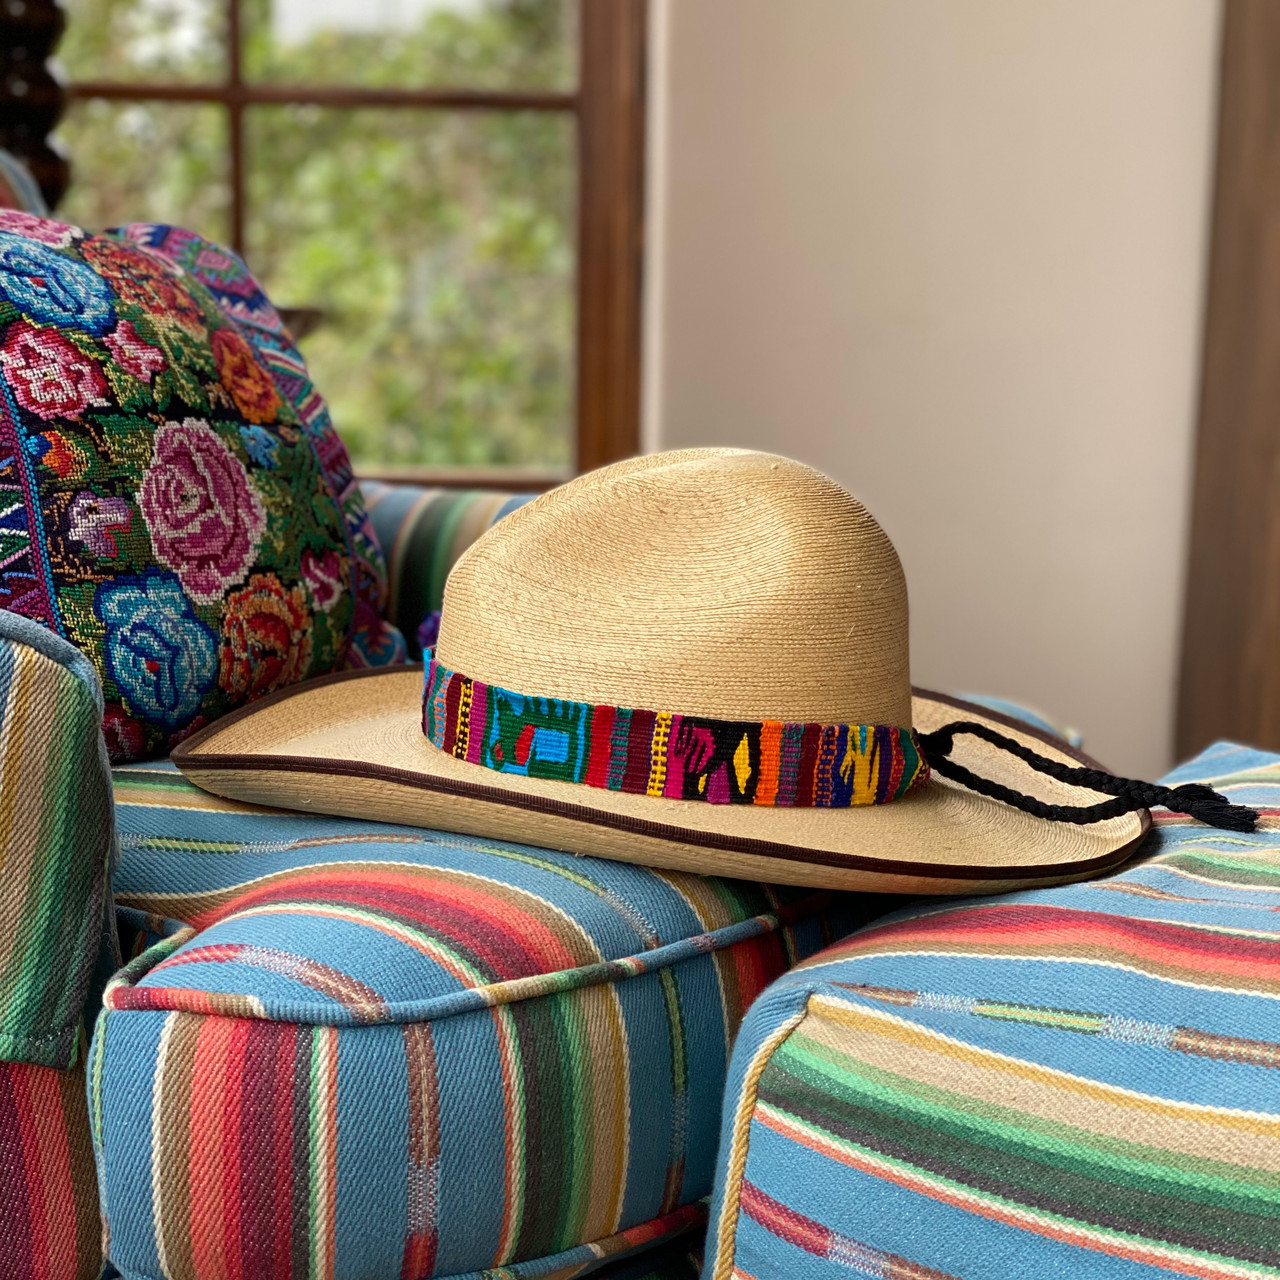 Mayan Arts Handmade Hatbands, Multicolor Hat Band, Handwoven, Wrap Around Tie, Western Wear, Cowboy